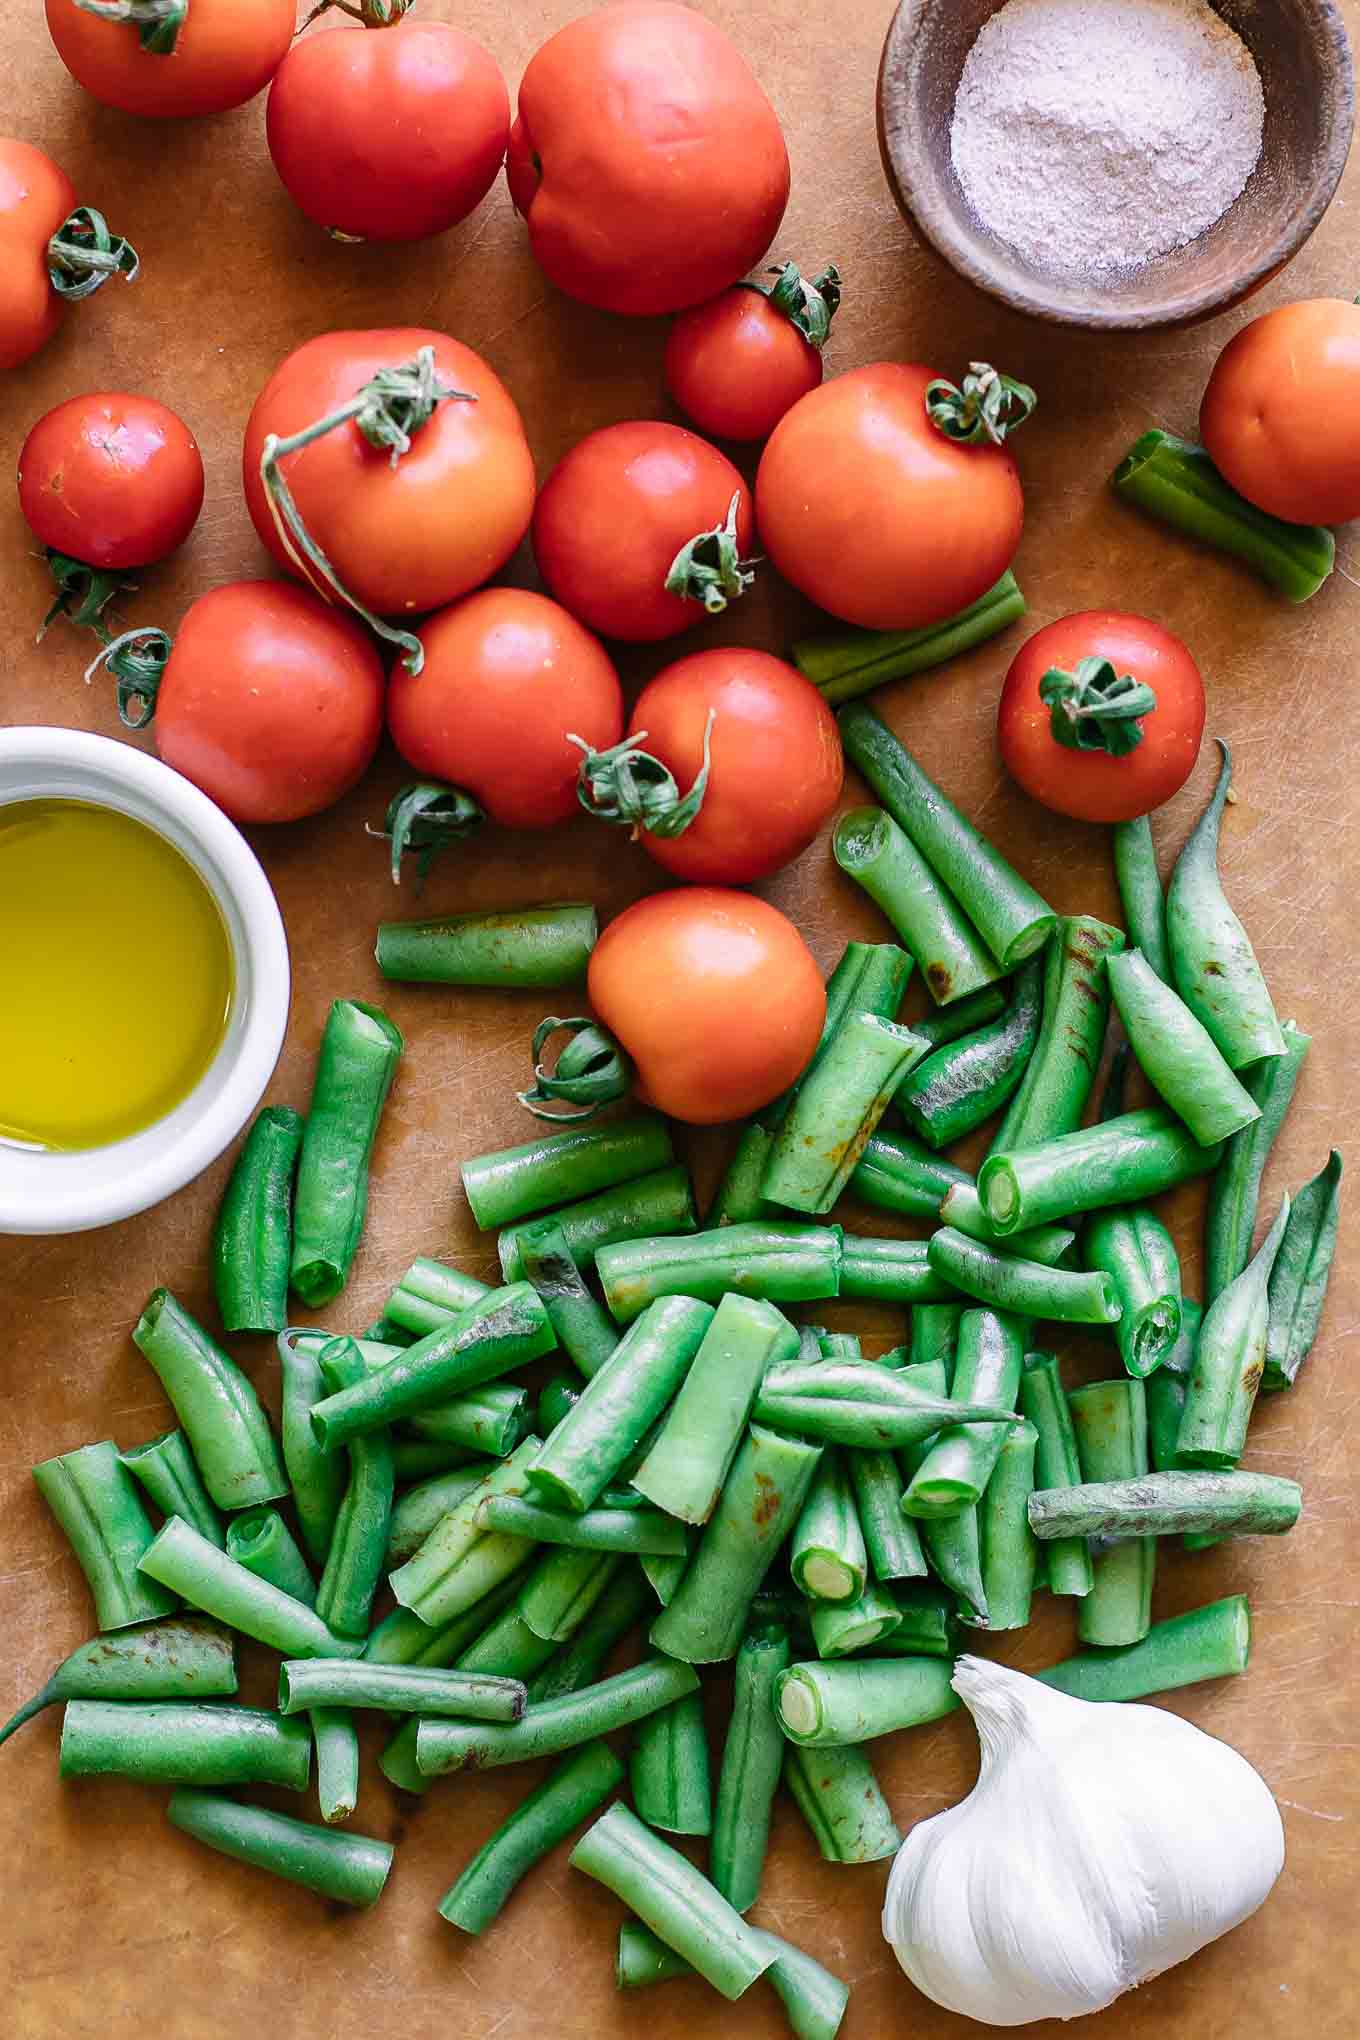 切成薄片的西红柿和绿豆在切菜板上GydF4y2Ba